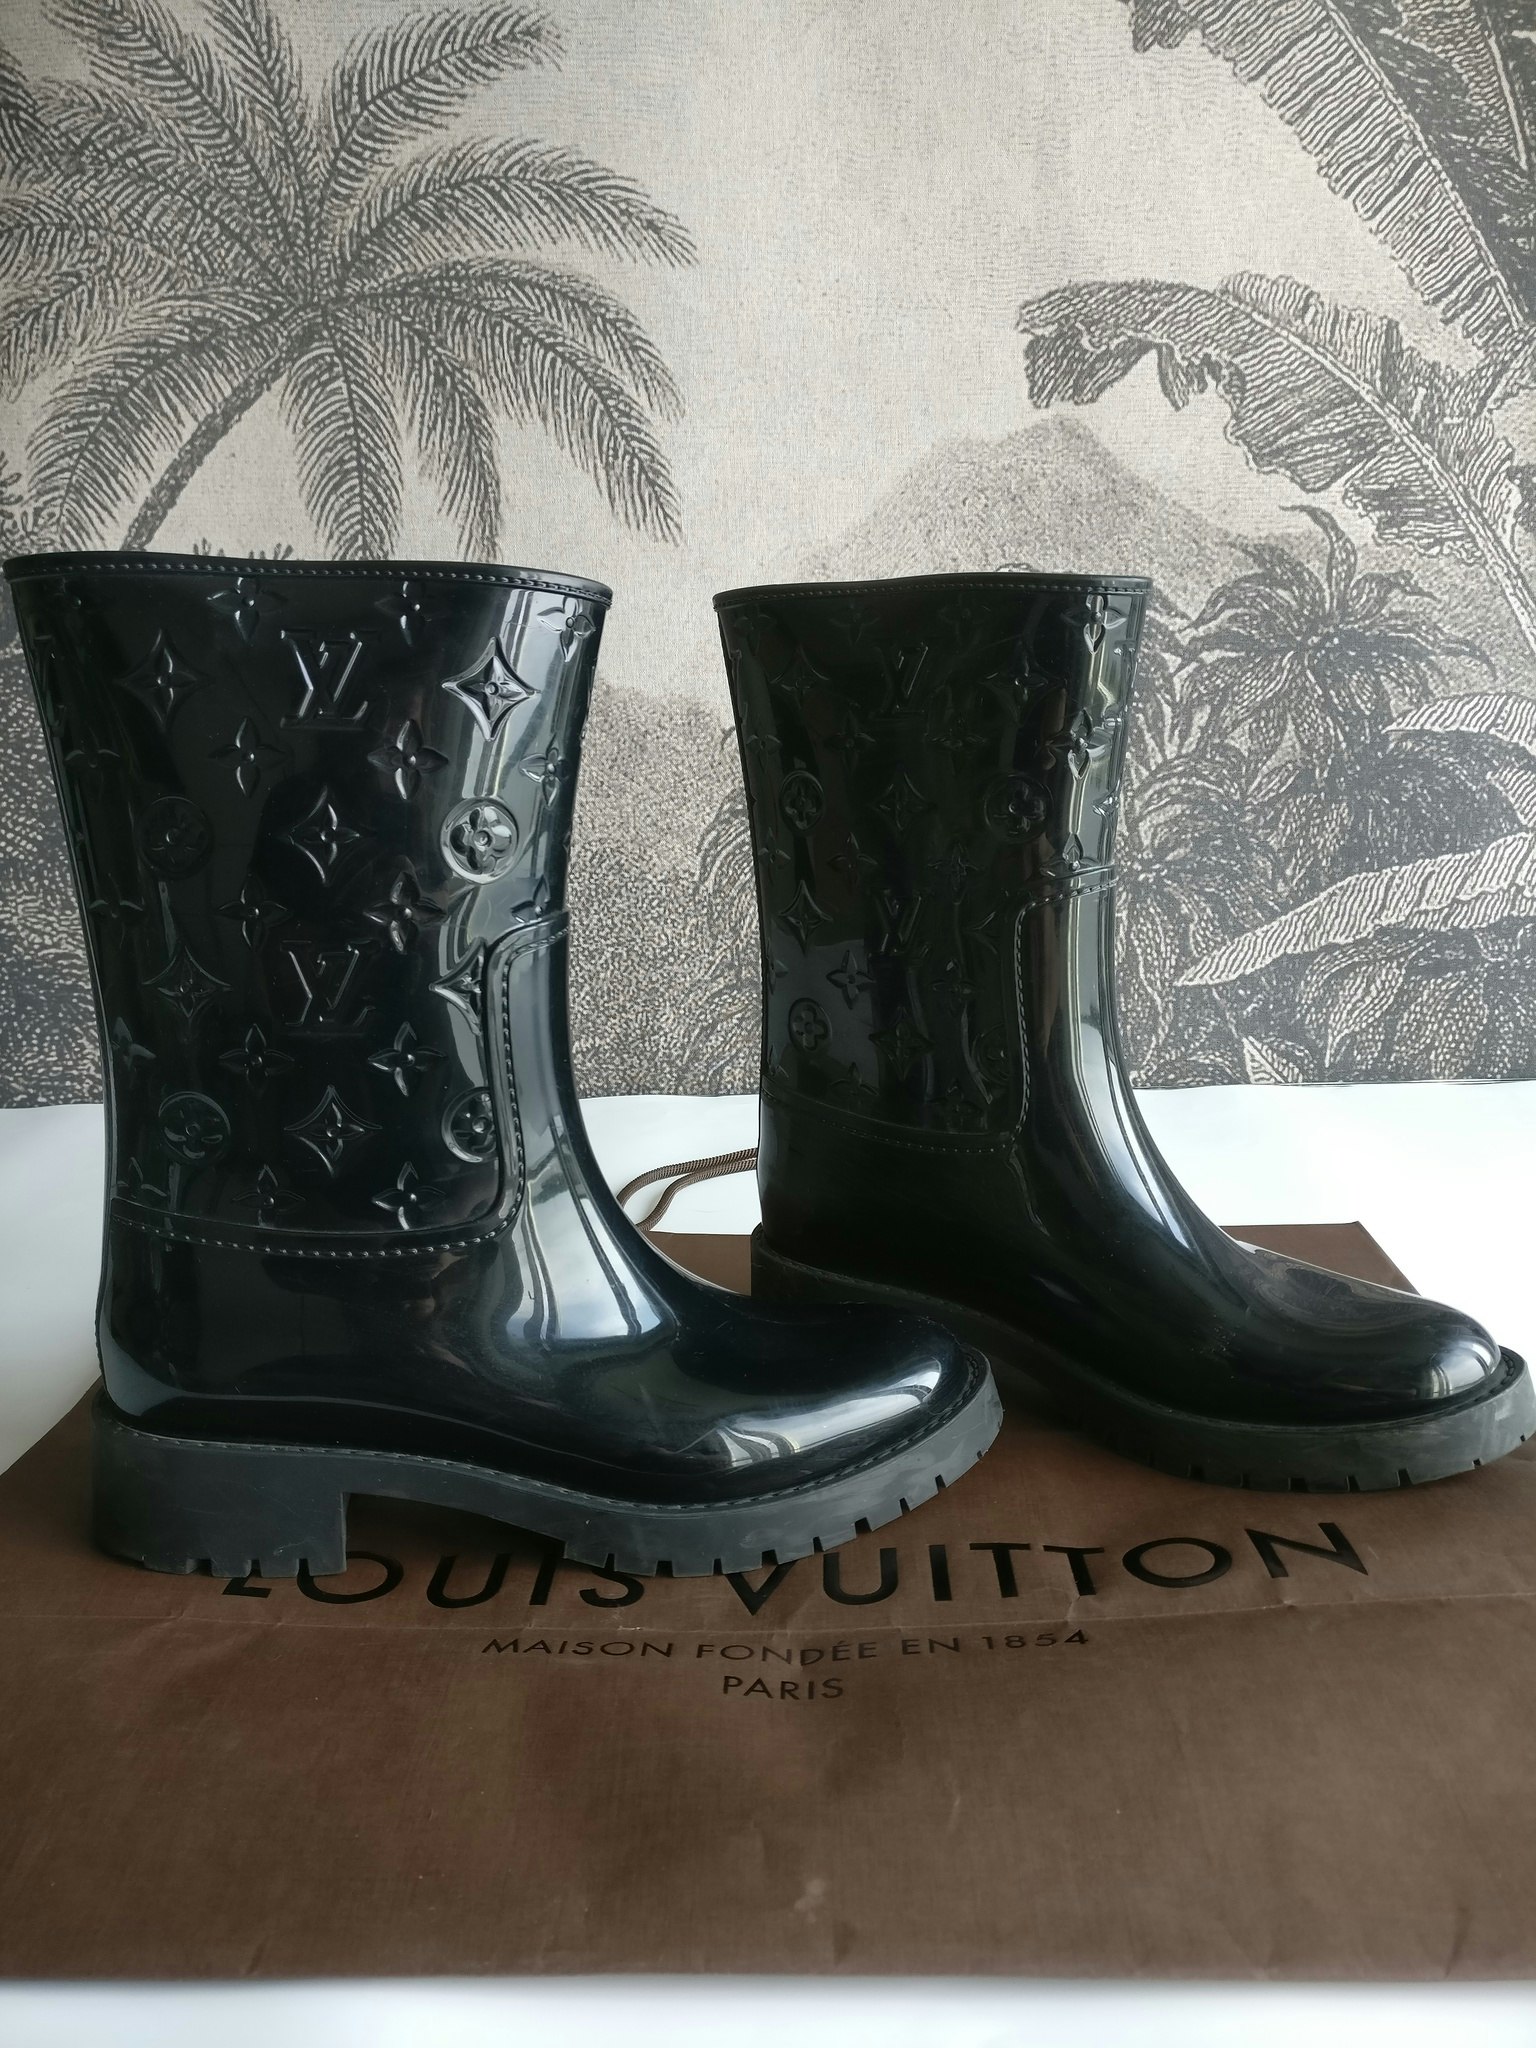 Authentic Louis Vuitton Drops Flat Half Boot